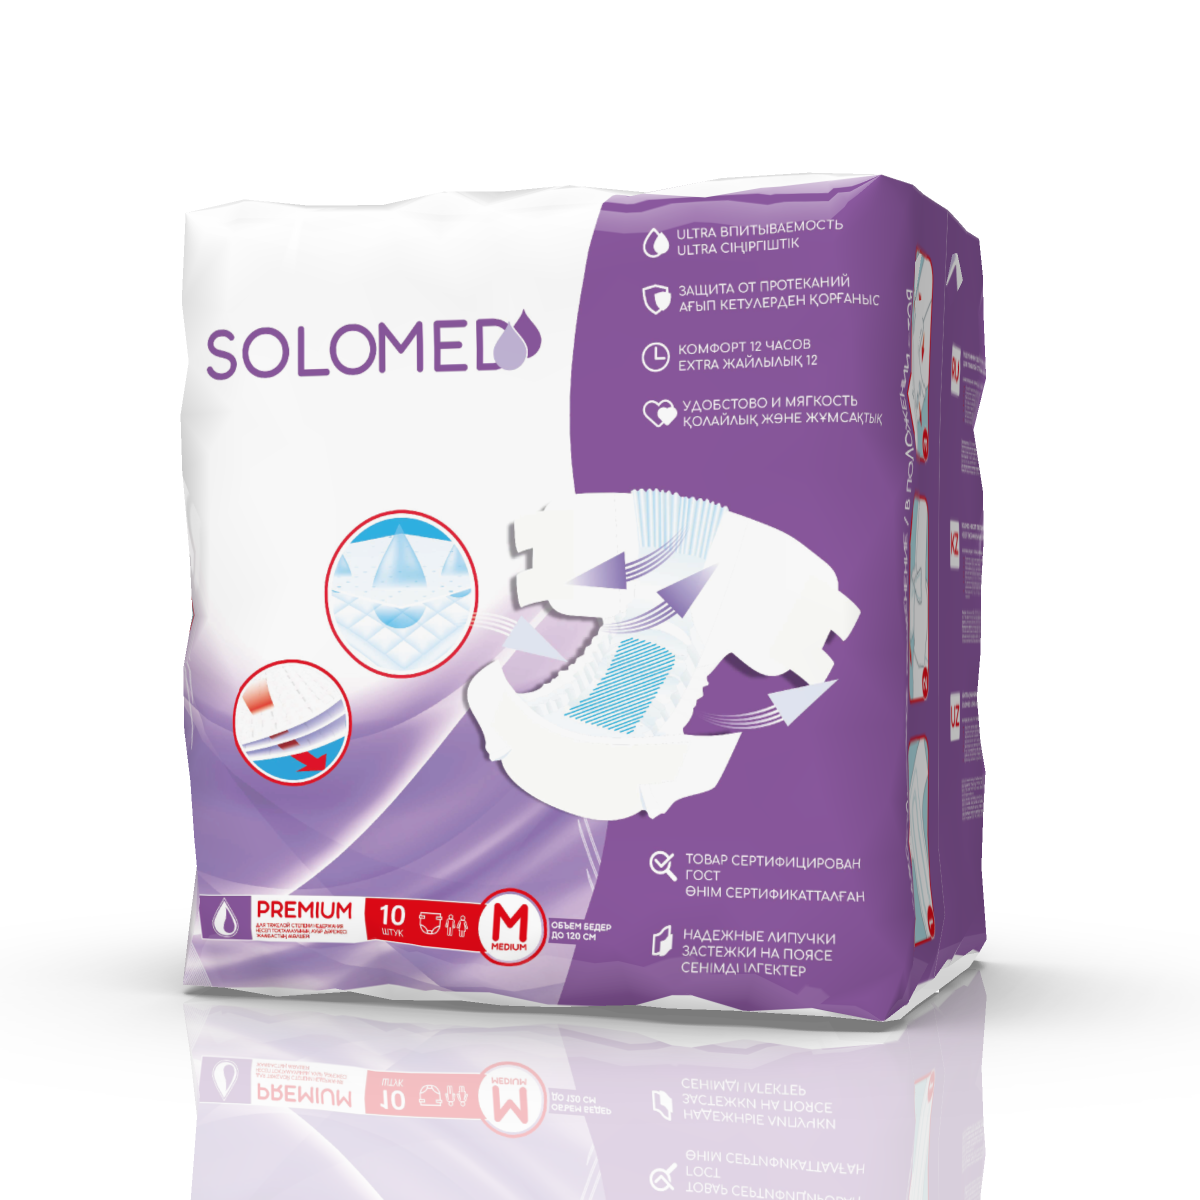 Solomed Premium, подгузники для взрослых (размер M), 10 шт. размер имеет значение и еще 69 развенчанных мифов о сексе